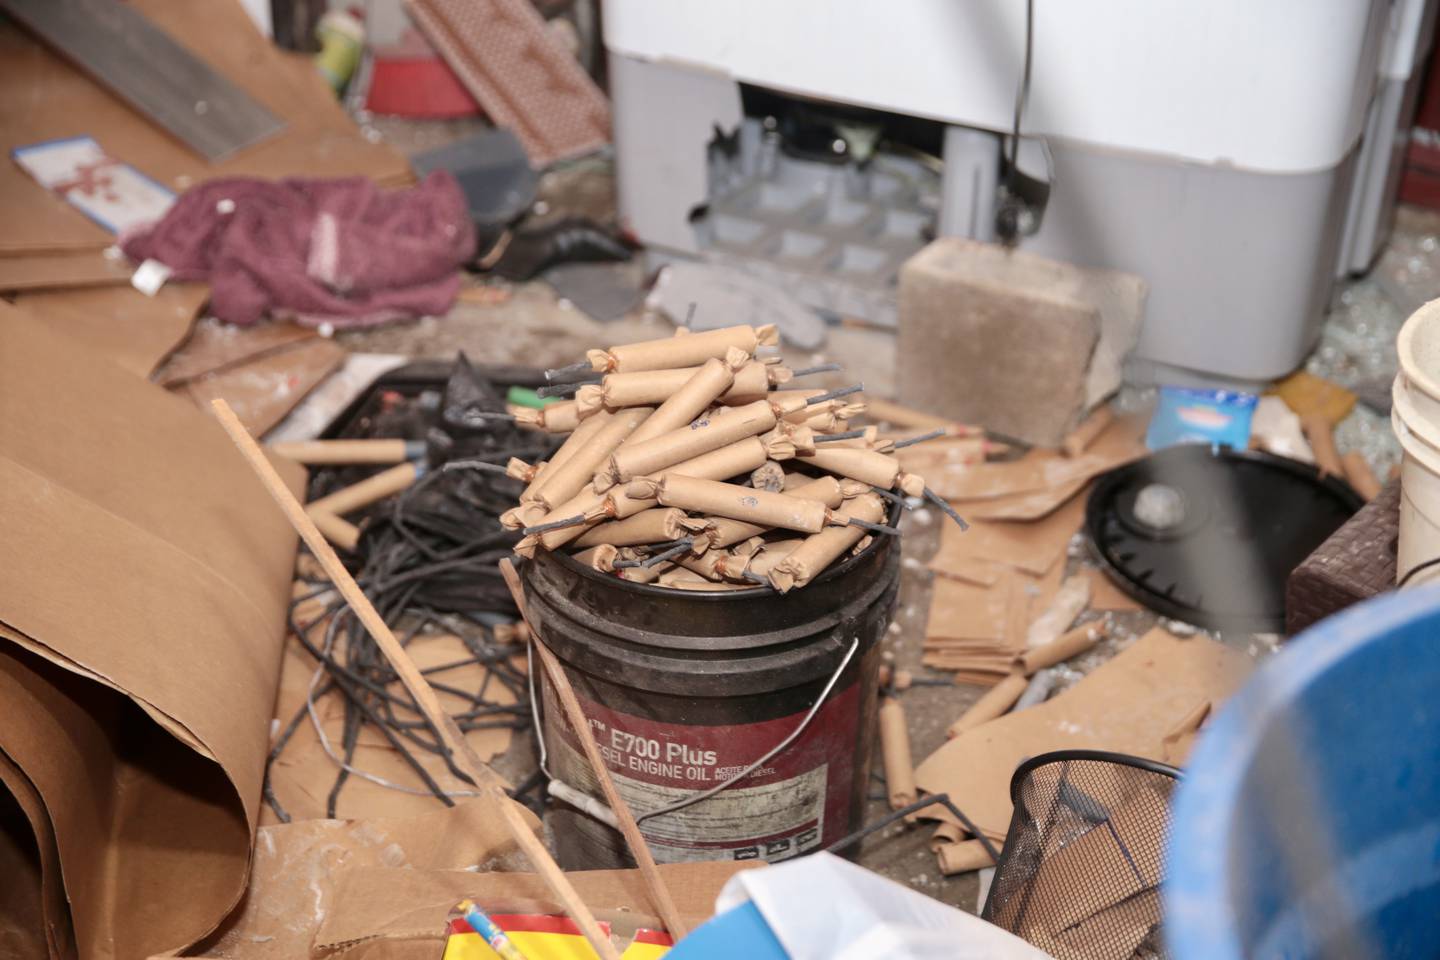 Estas son algunas de las bombetas que el Cuerpo de Bomberos encontraron en la vivienda luego de la explosión. Foto: Bomberos.